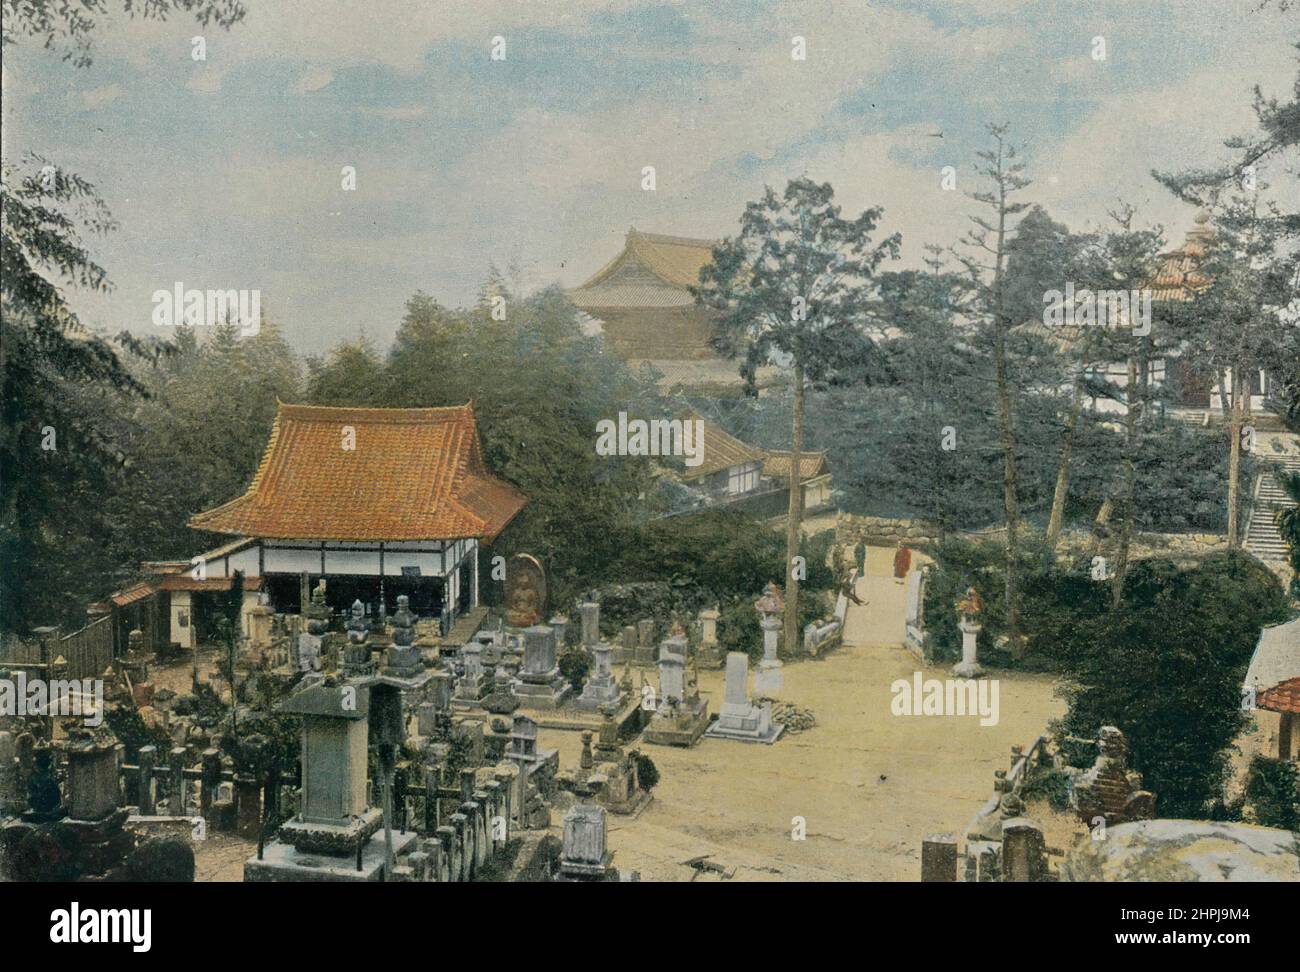 LE CIMETIÈRE KURODANI A KIOTO, TOMBES SCULPTÉES Autour Du Monde Japon Paysages Monuments 1895 - 1900 (4)  - 19 th century french colored photography print Stock Photo